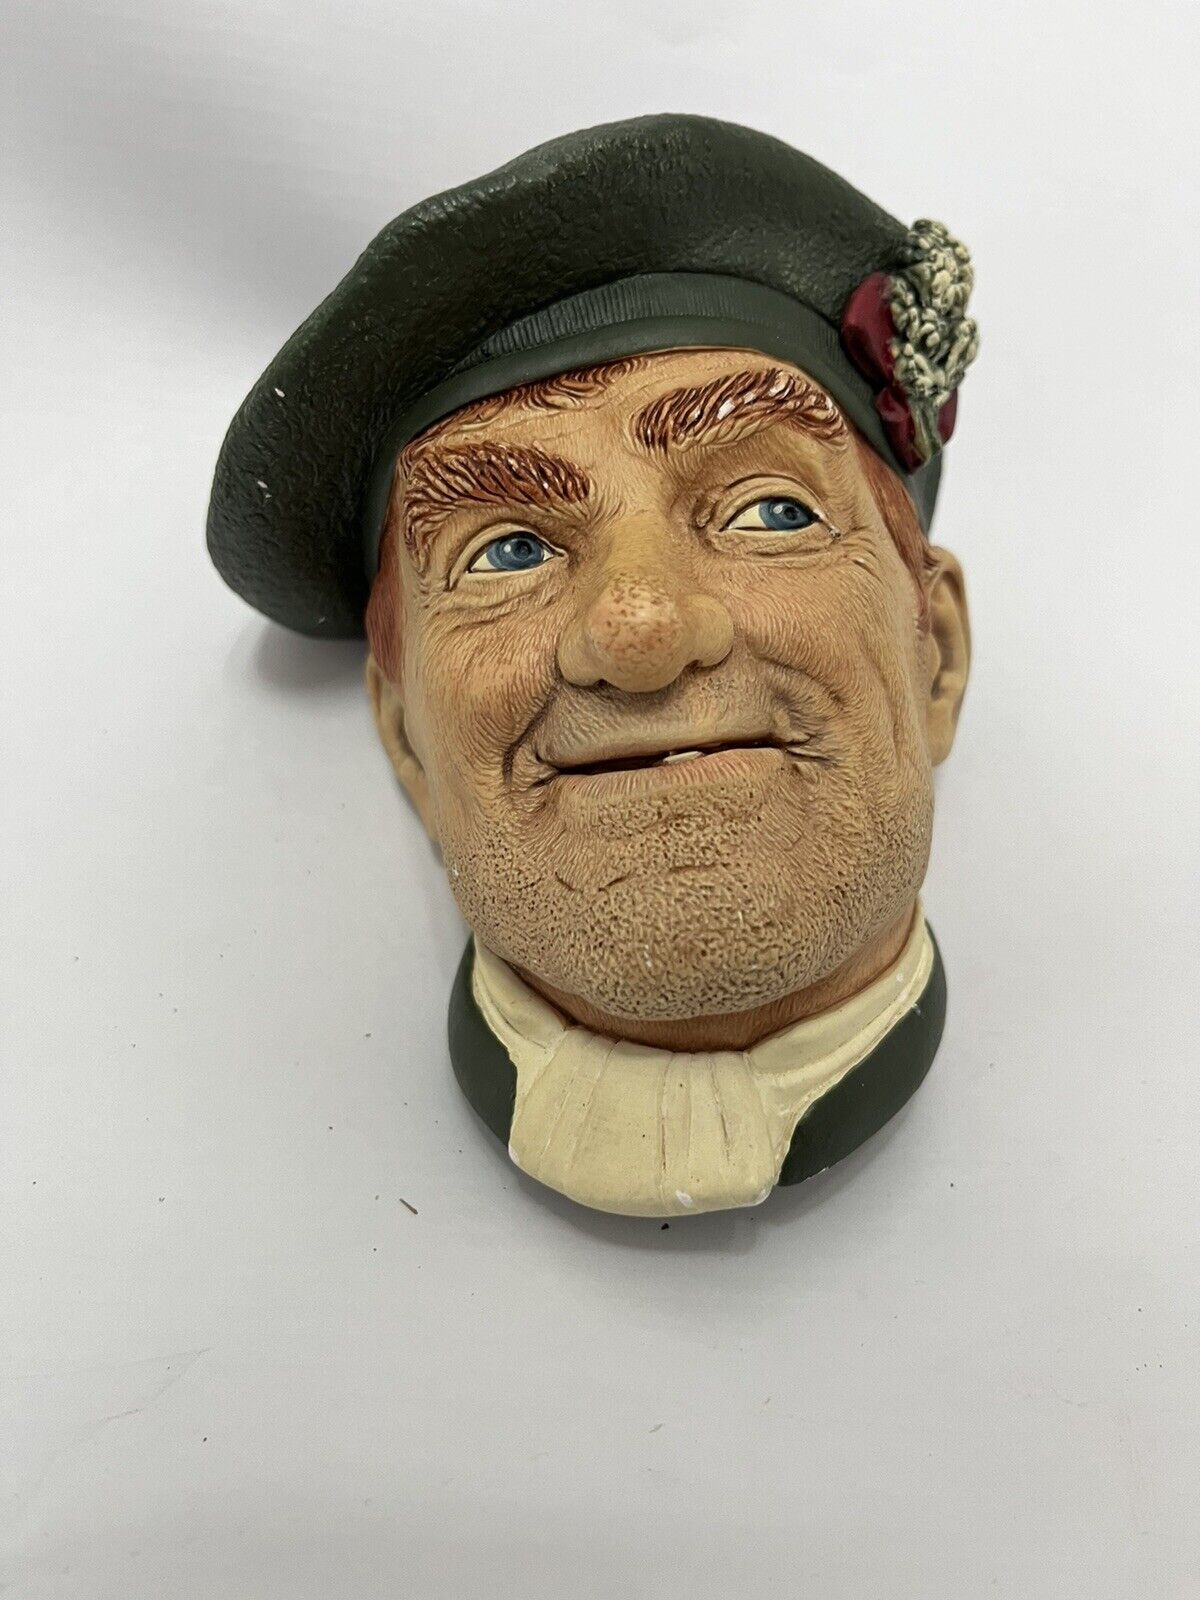 Vintage Bossons Head Figurine Chalkware